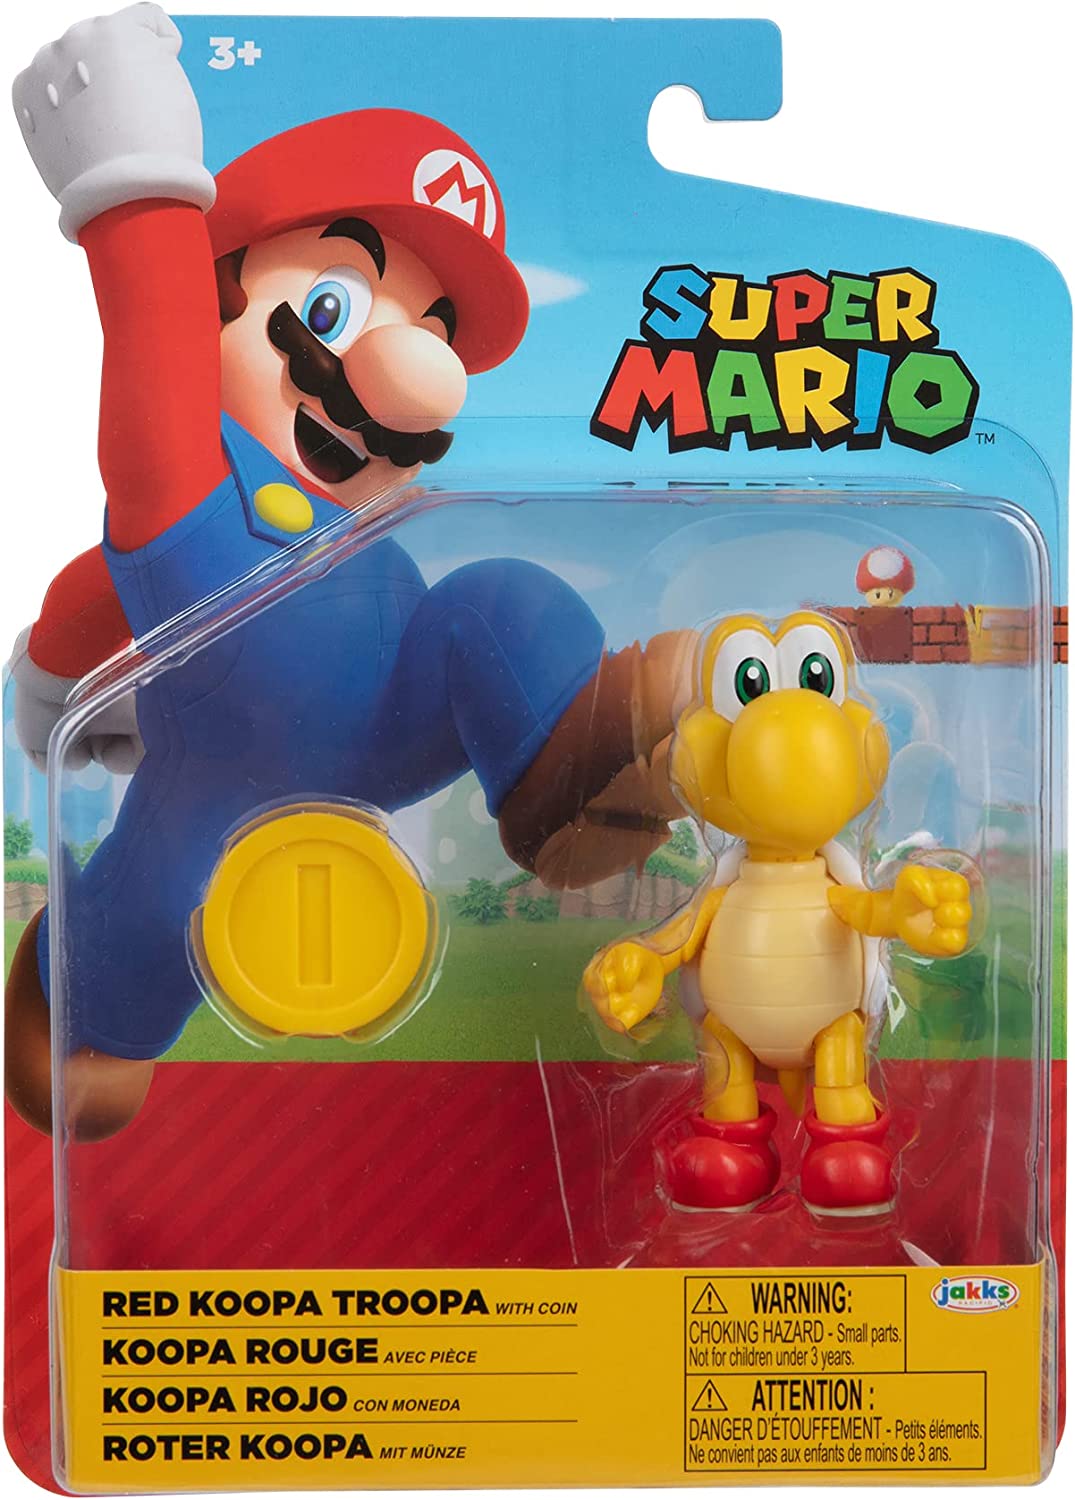 Figuras de Personajes Super Mario coleccionables.